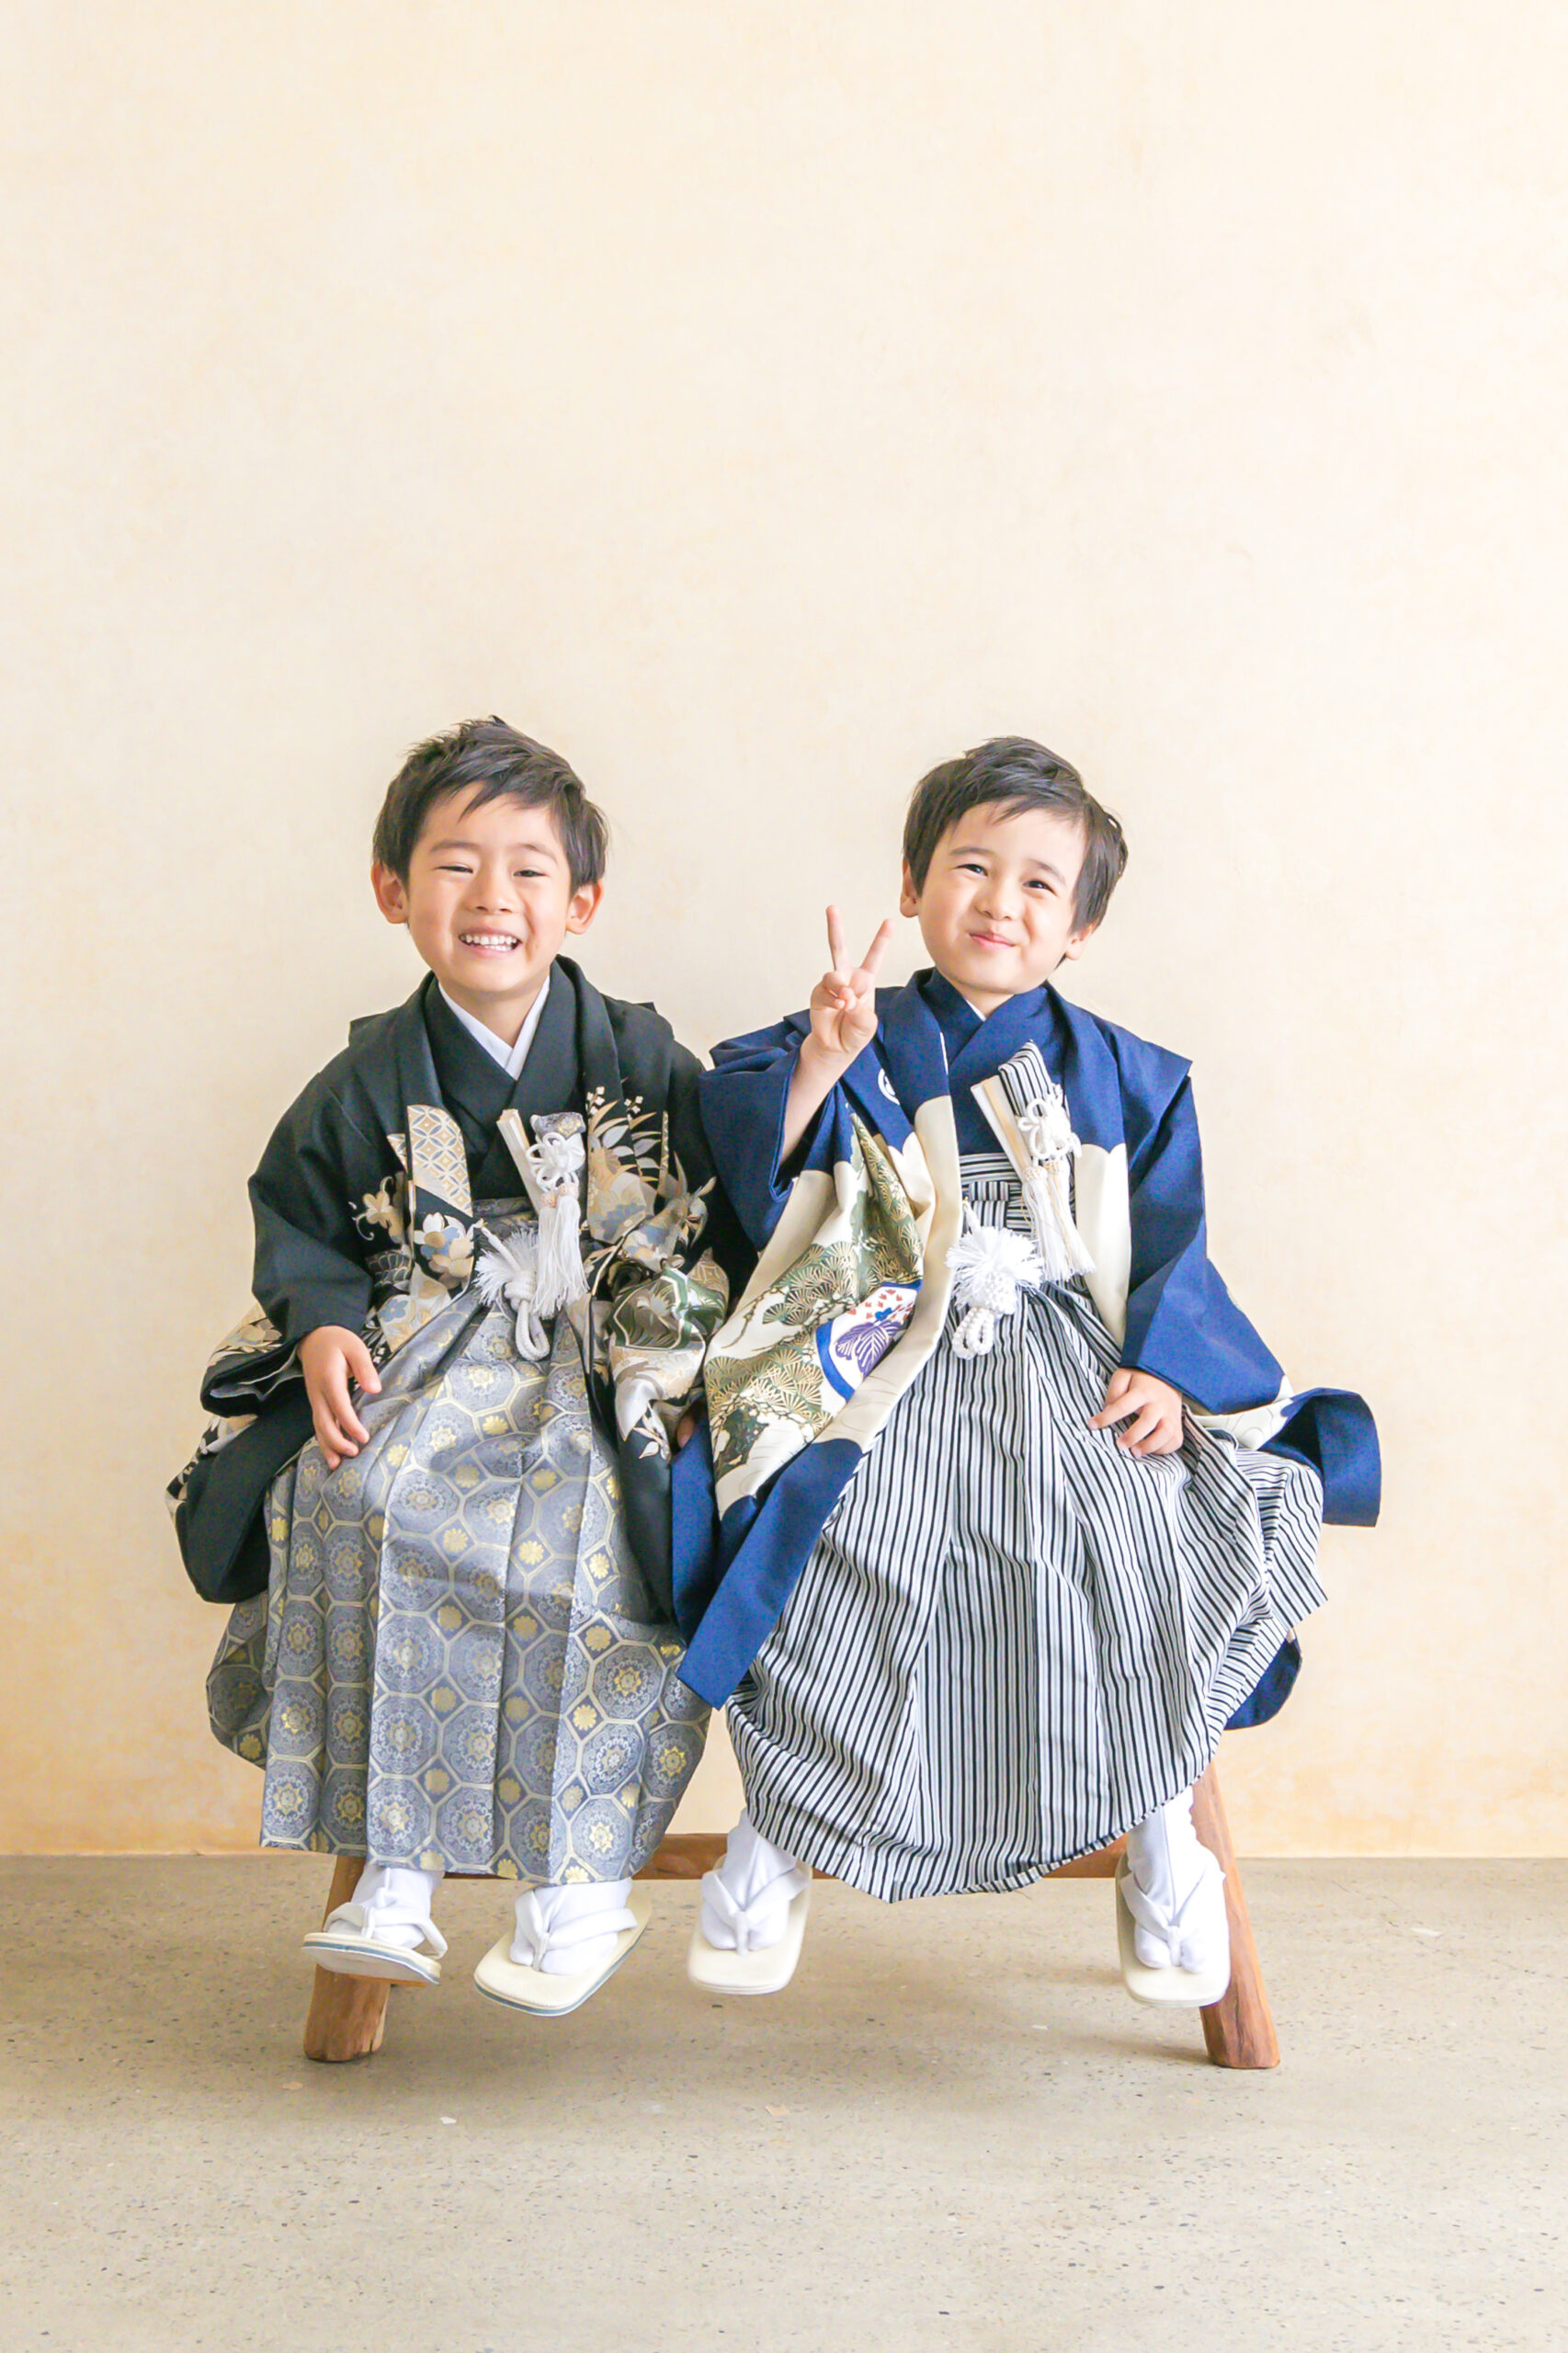 七五三や家族写真など子供の写真撮影は墨田区・本所吾妻橋の花と星フォトスタジオがおすすめ。